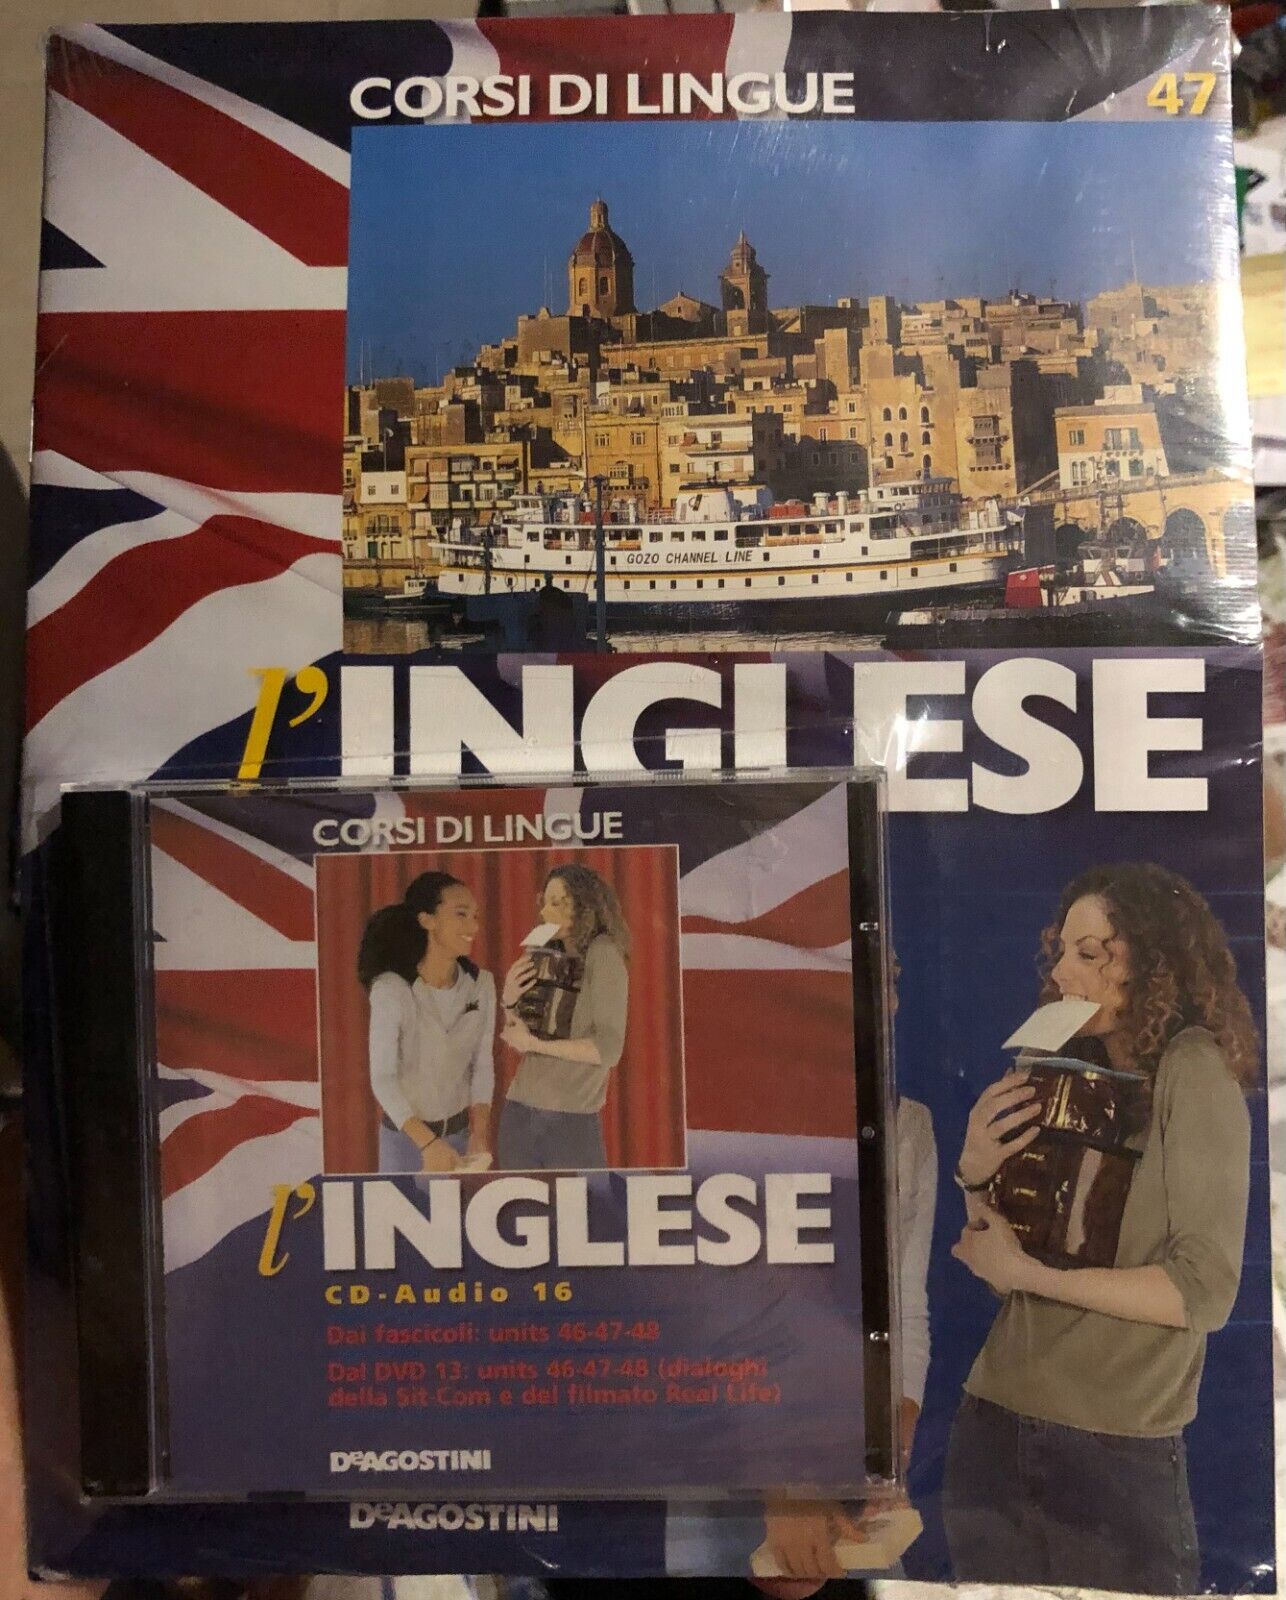 Corsi di lingue L'inglese fascicolo 47+CD di Aa.vv.,  2008,  Deagostini